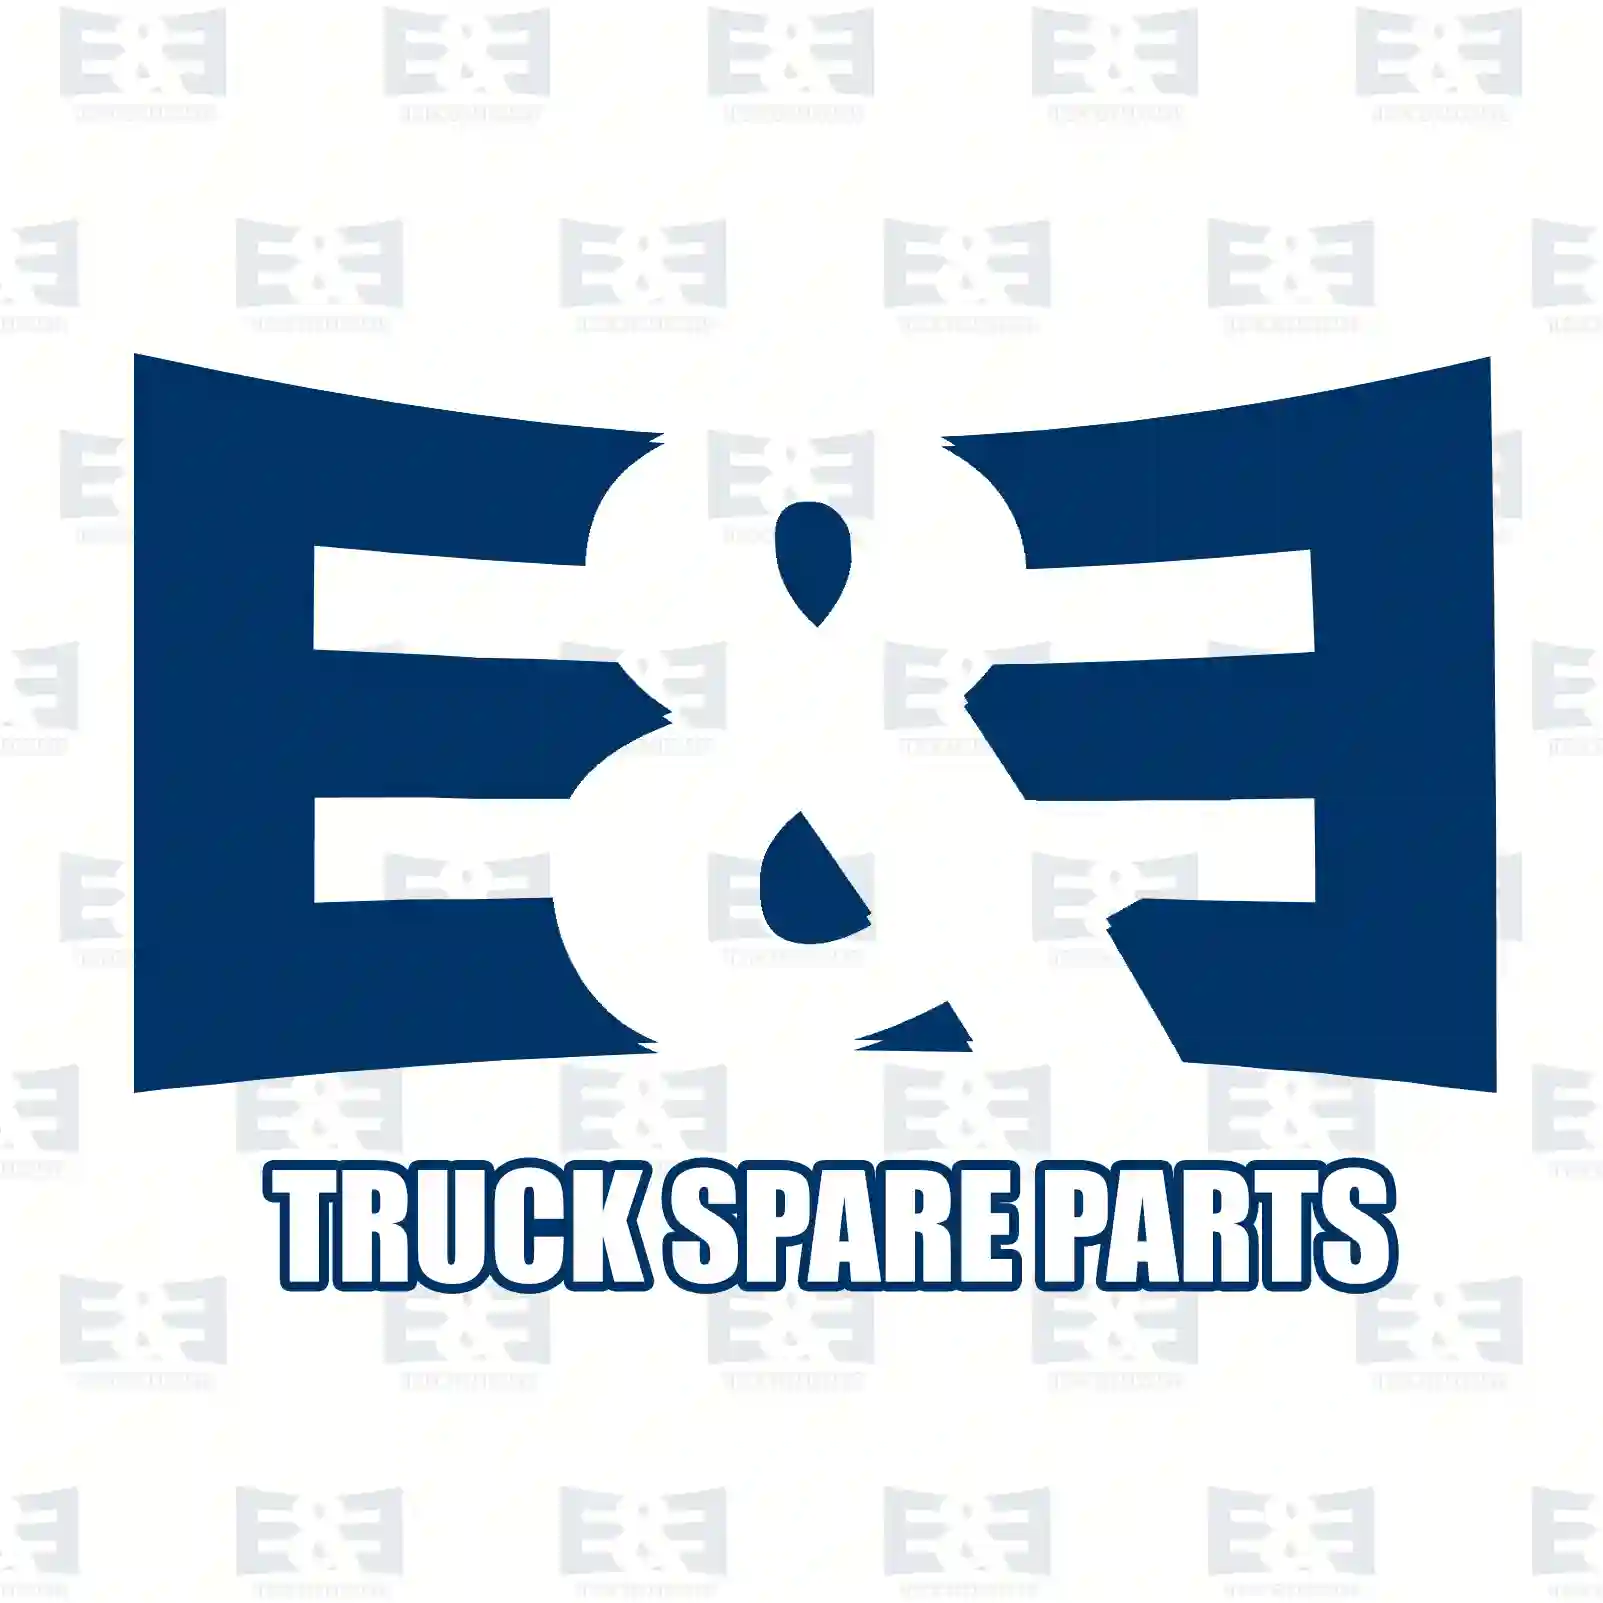 Air tank, 2E2294214, 5010525446, ZG50121-0008, , , , , ||  2E2294214 E&E Truck Spare Parts | Truck Spare Parts, Auotomotive Spare Parts Air tank, 2E2294214, 5010525446, ZG50121-0008, , , , , ||  2E2294214 E&E Truck Spare Parts | Truck Spare Parts, Auotomotive Spare Parts